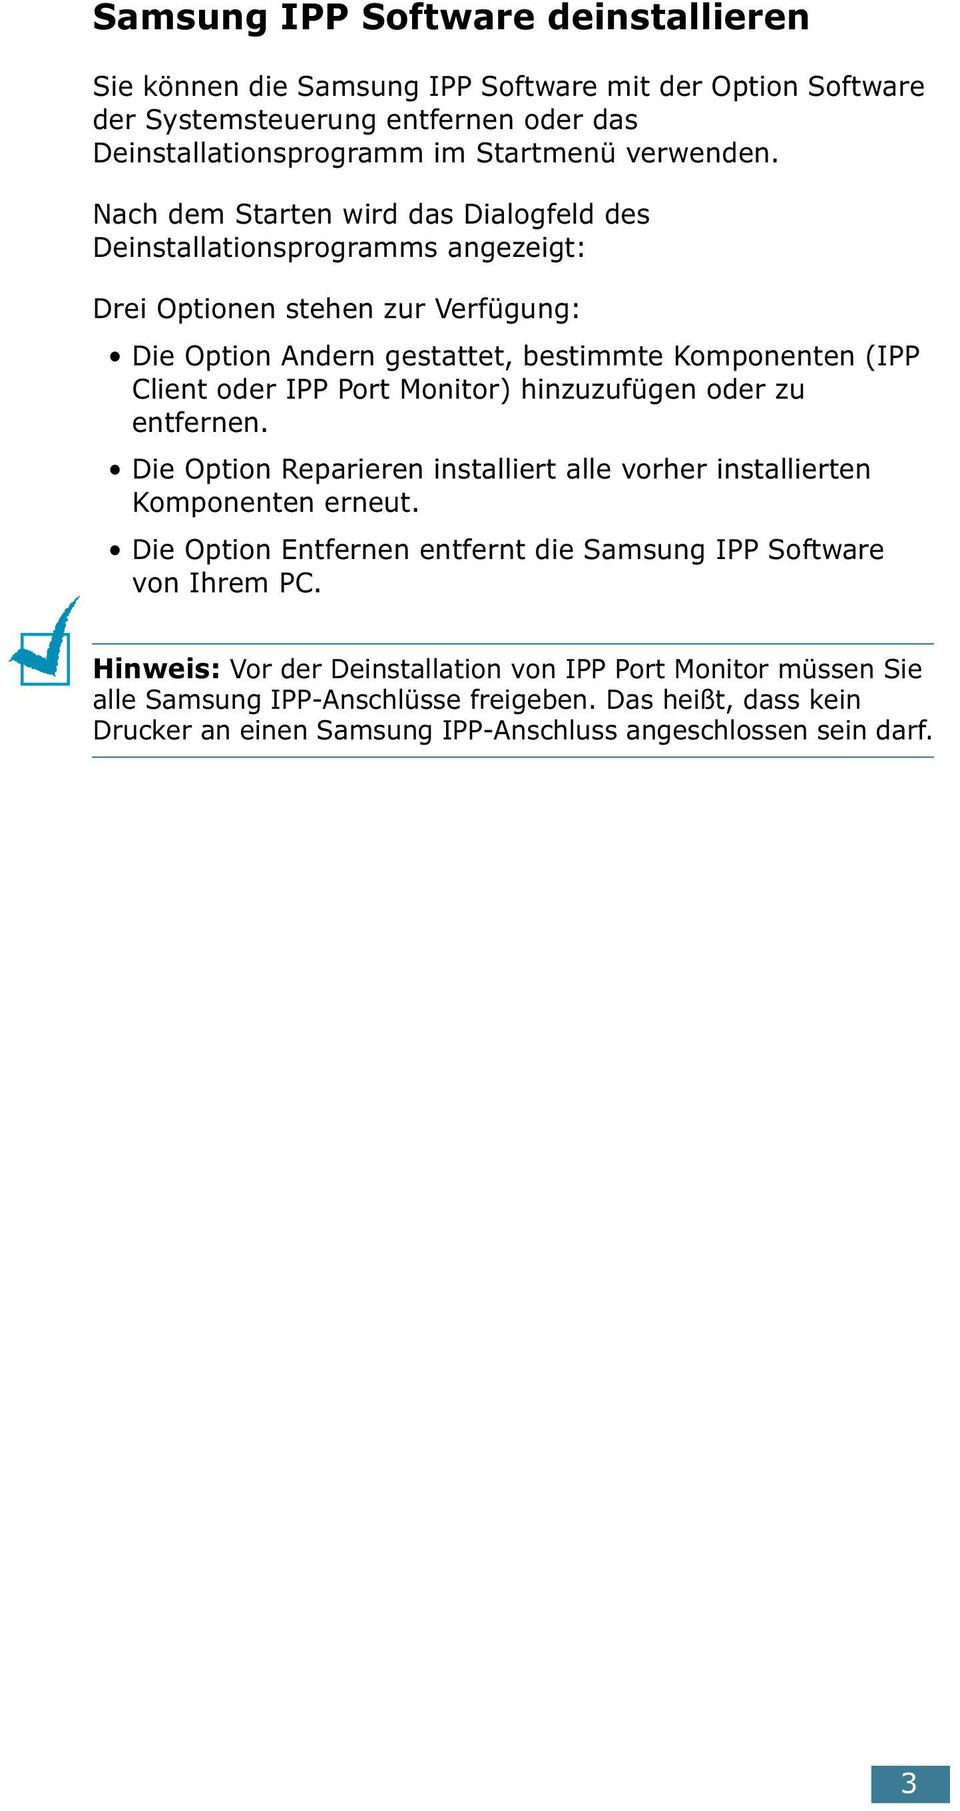 Port Monitor) hinzuzufügen oder zu entfernen. Die Option Reparieren installiert alle vorher installierten Komponenten erneut.